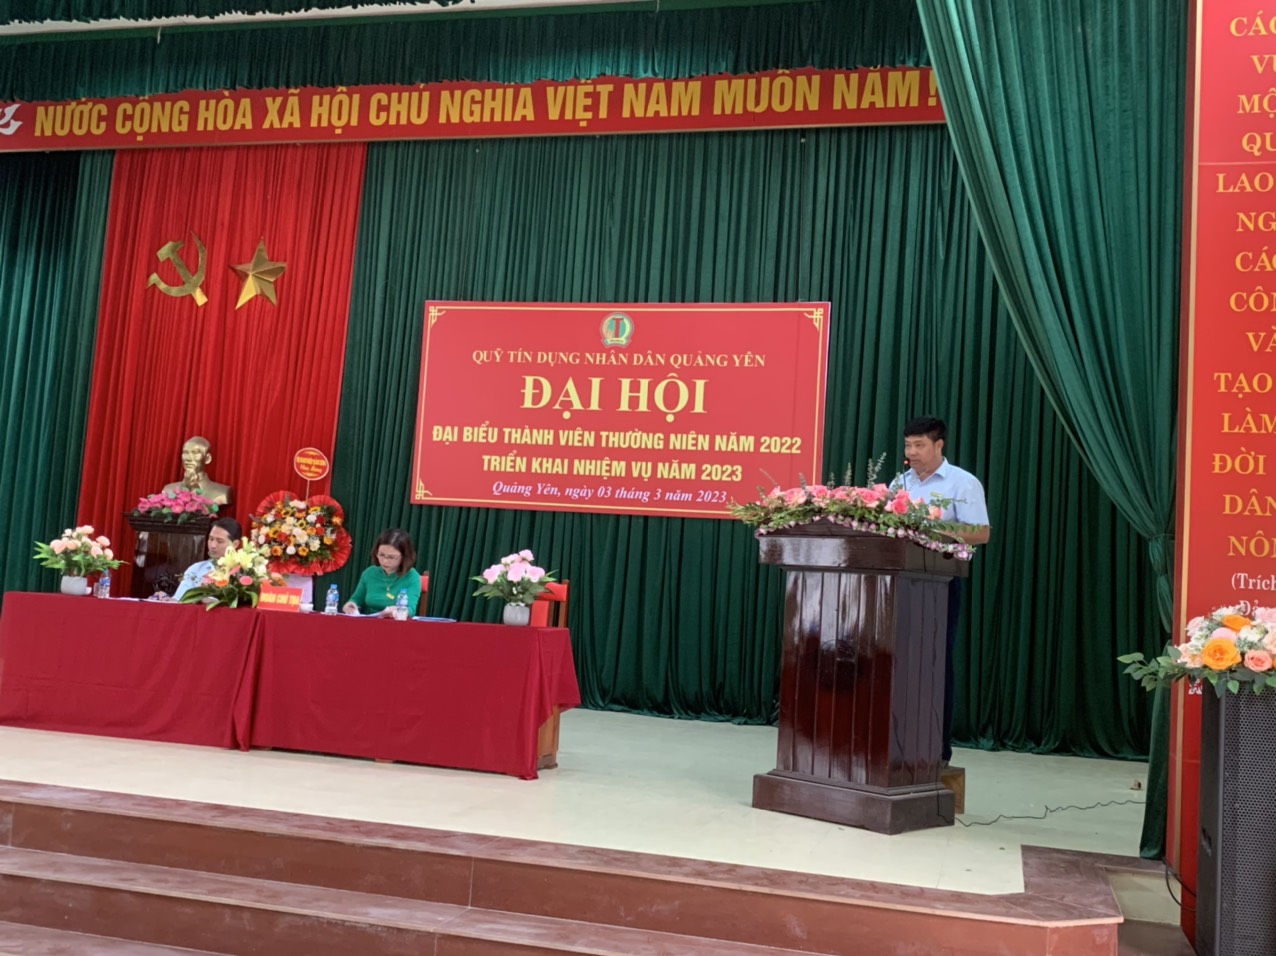 Quỹ tín dụng nhân dân Quảng Yên tổ chức đại hội đại biểu thành viên thường niên năm 2022